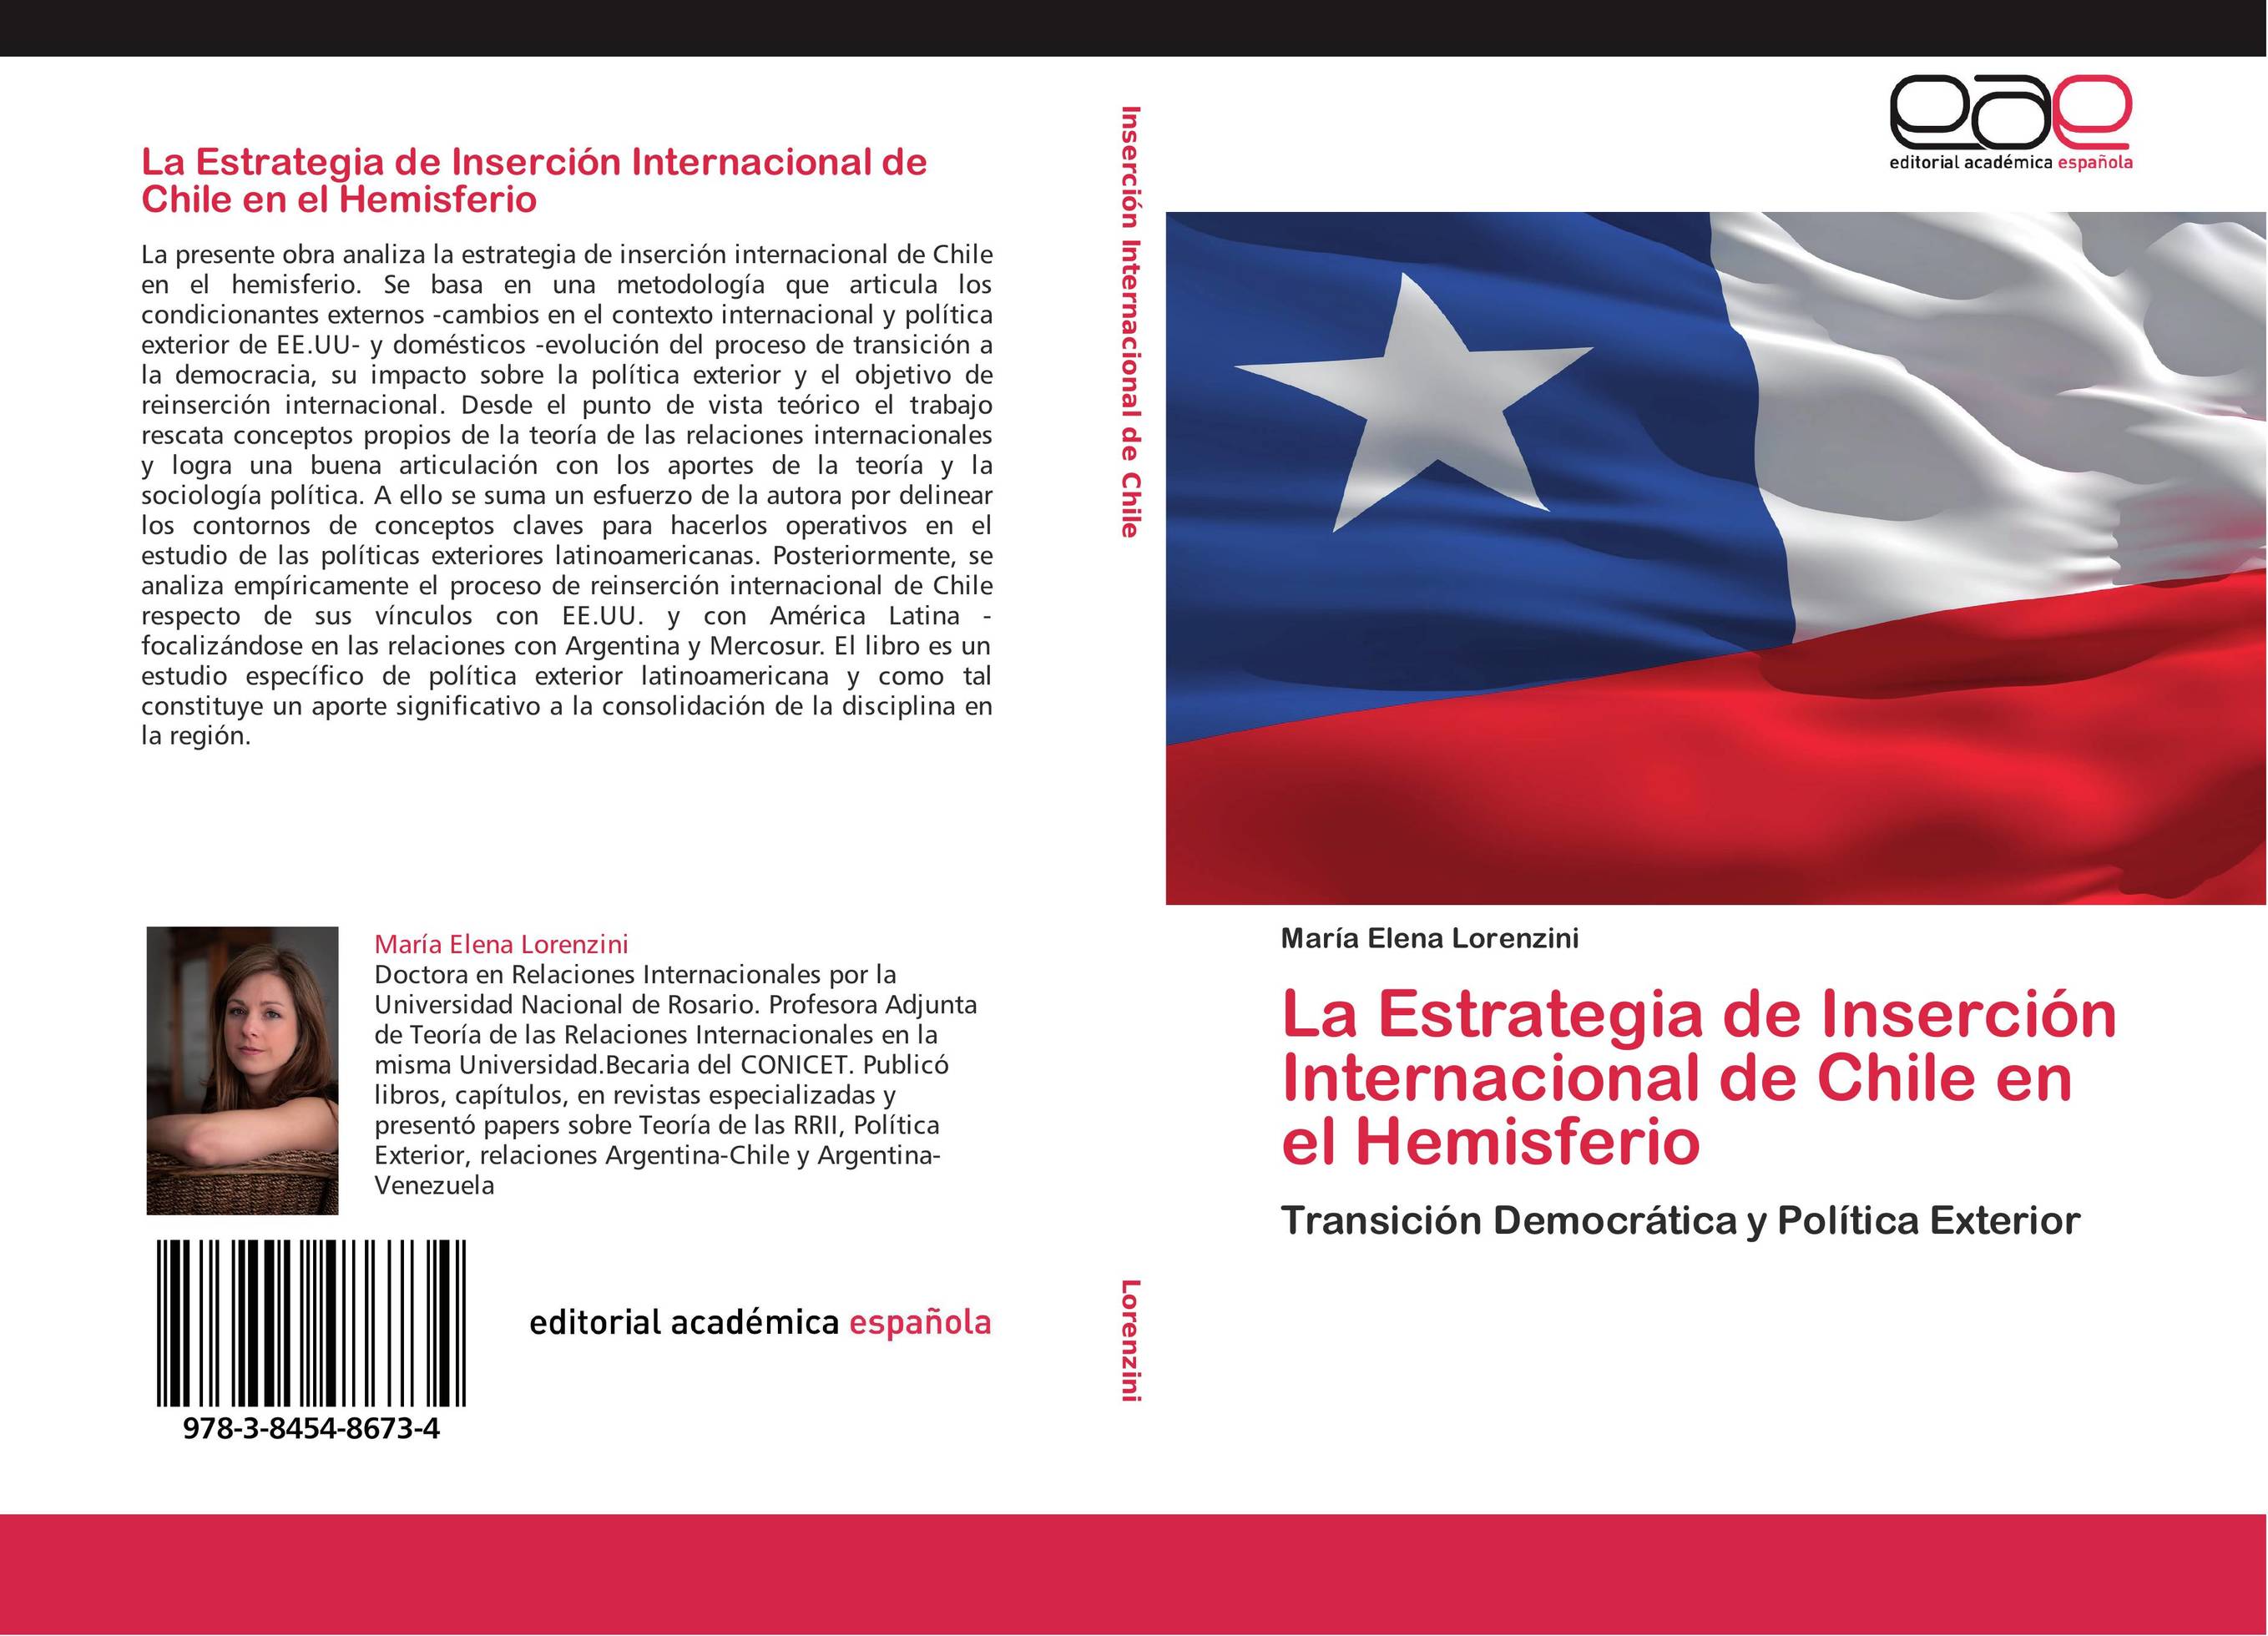 La Estrategia de Inserción Internacional de Chile en el Hemisferio